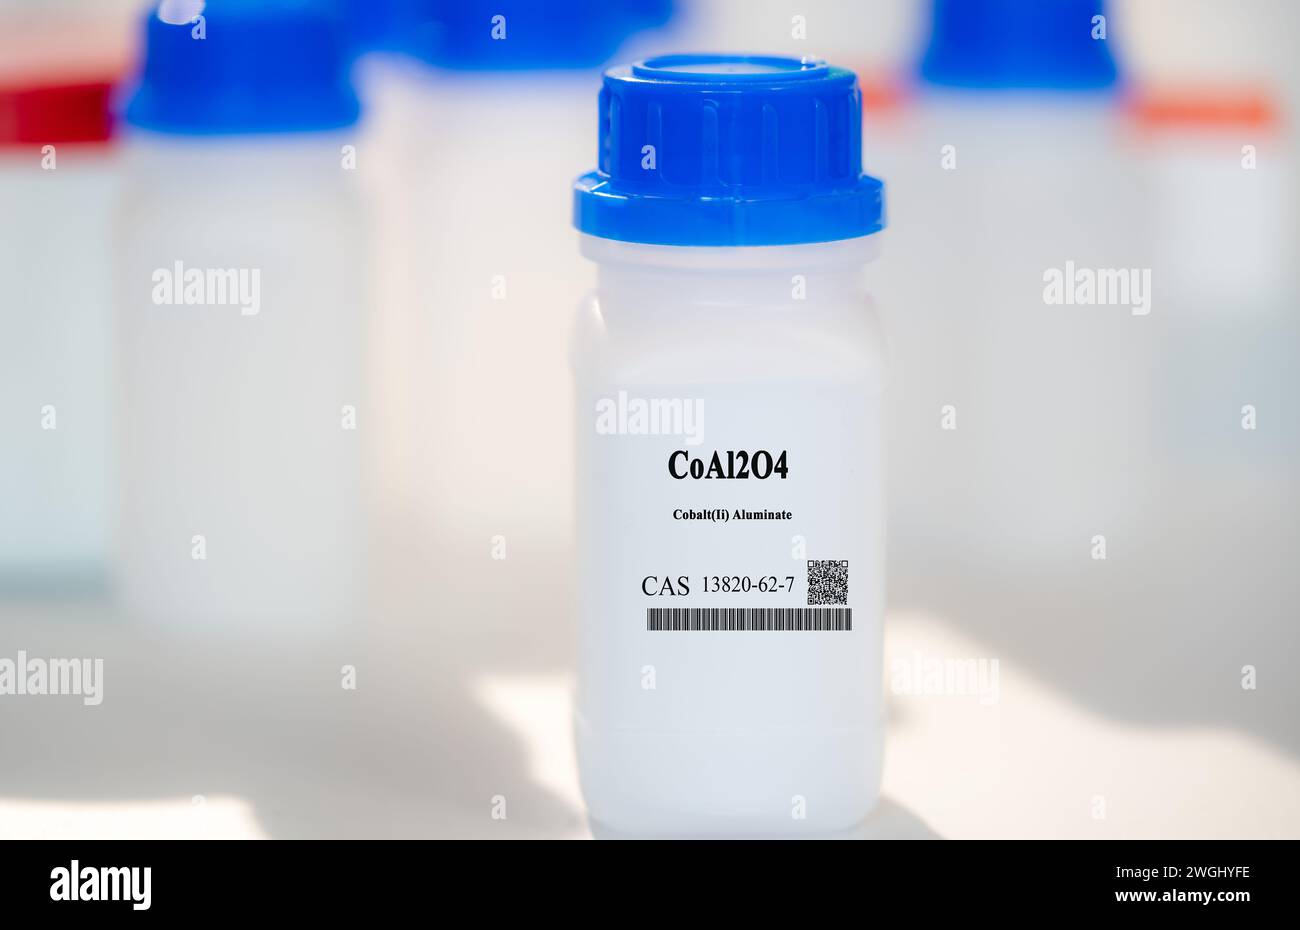 CoAl2O4 cobalto (II) aluminato CAS 13820-62-7 sustancia química en envases de laboratorio de plástico blanco Foto de stock